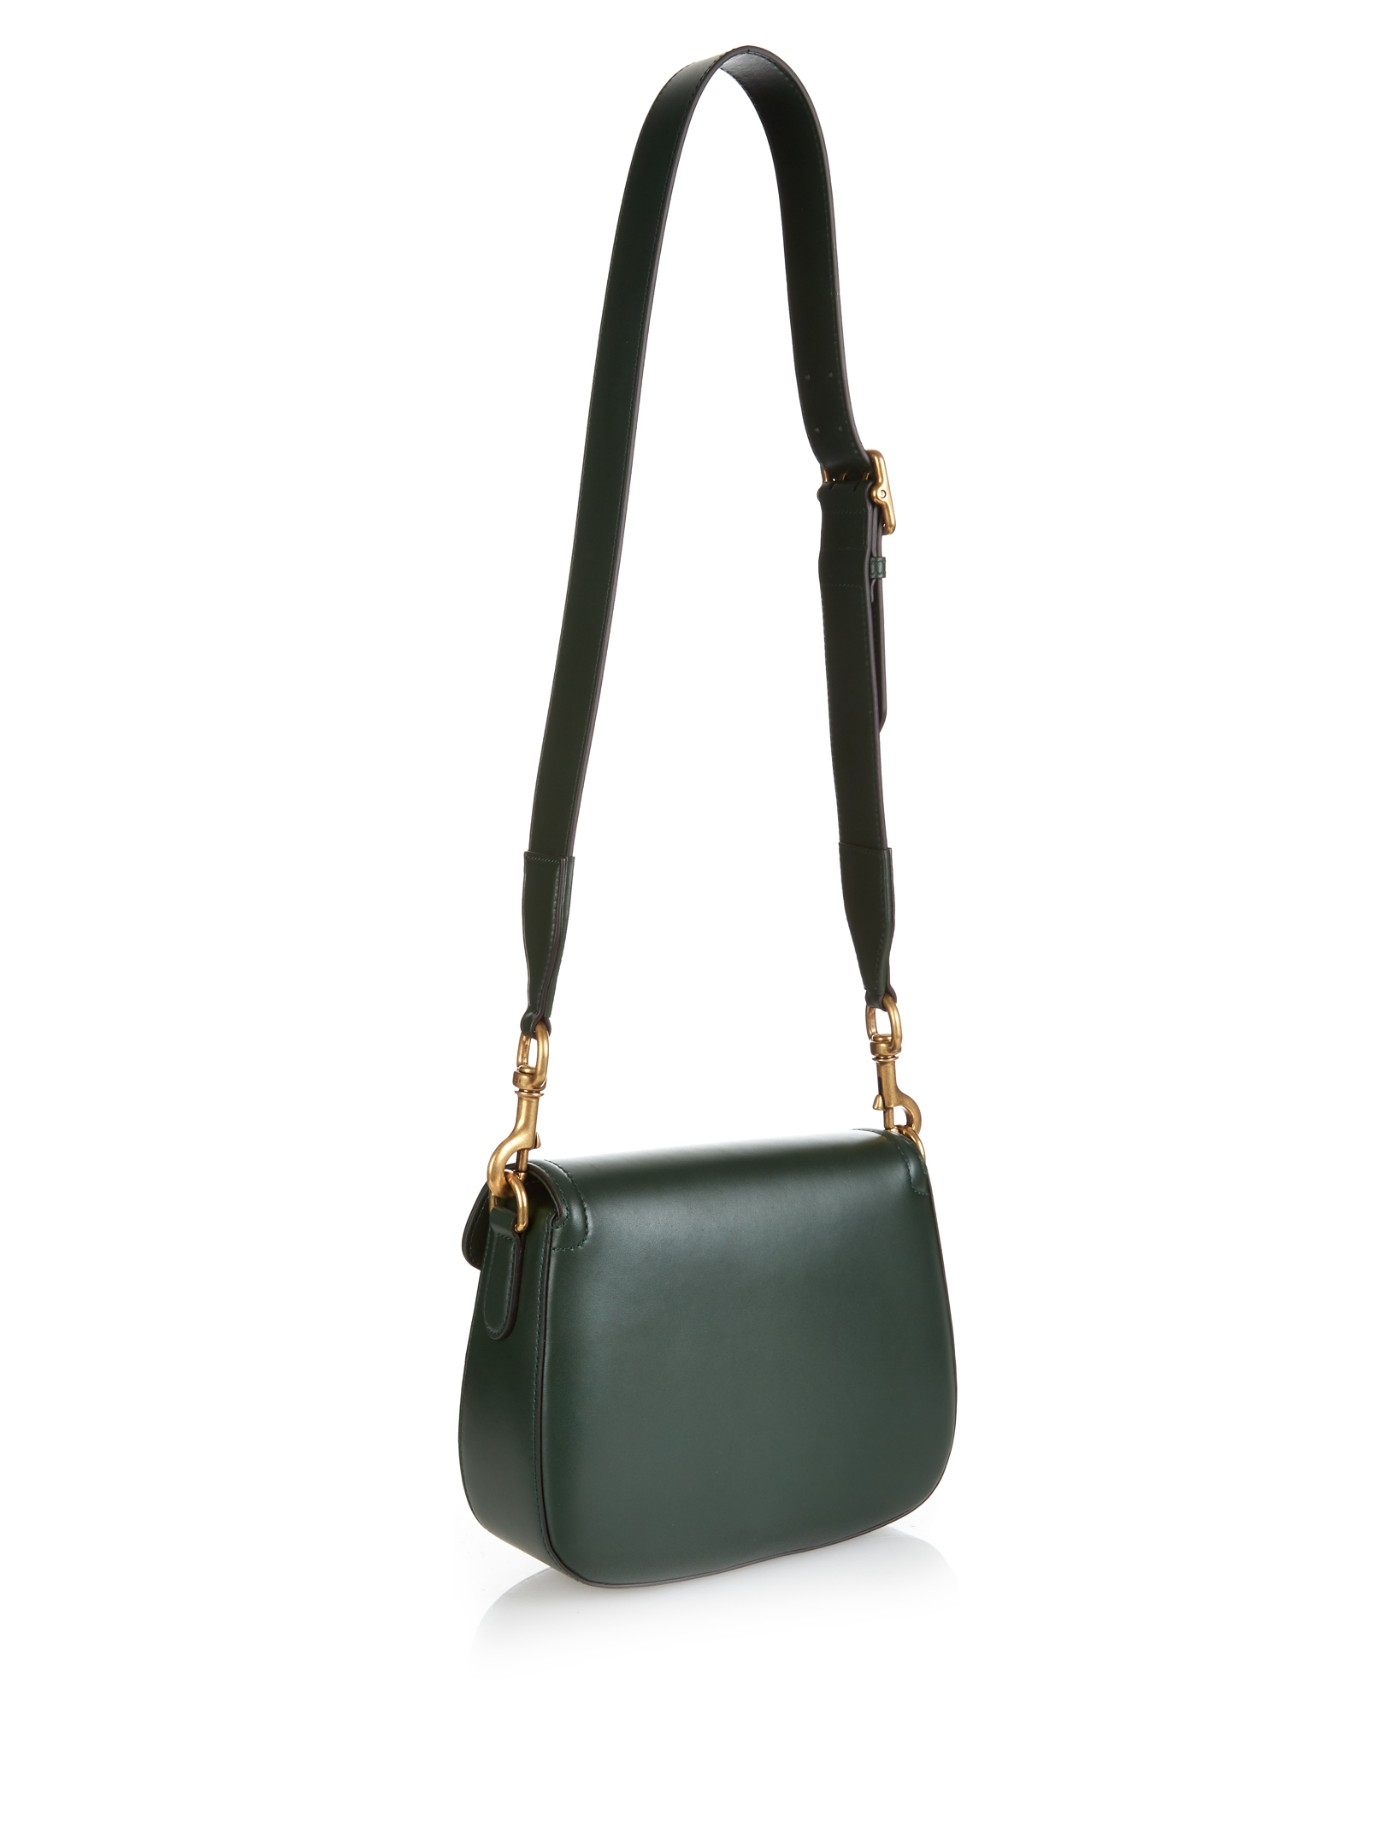 Lyst - Gucci Lady Web Medium Leather Cross-body Bag in Green